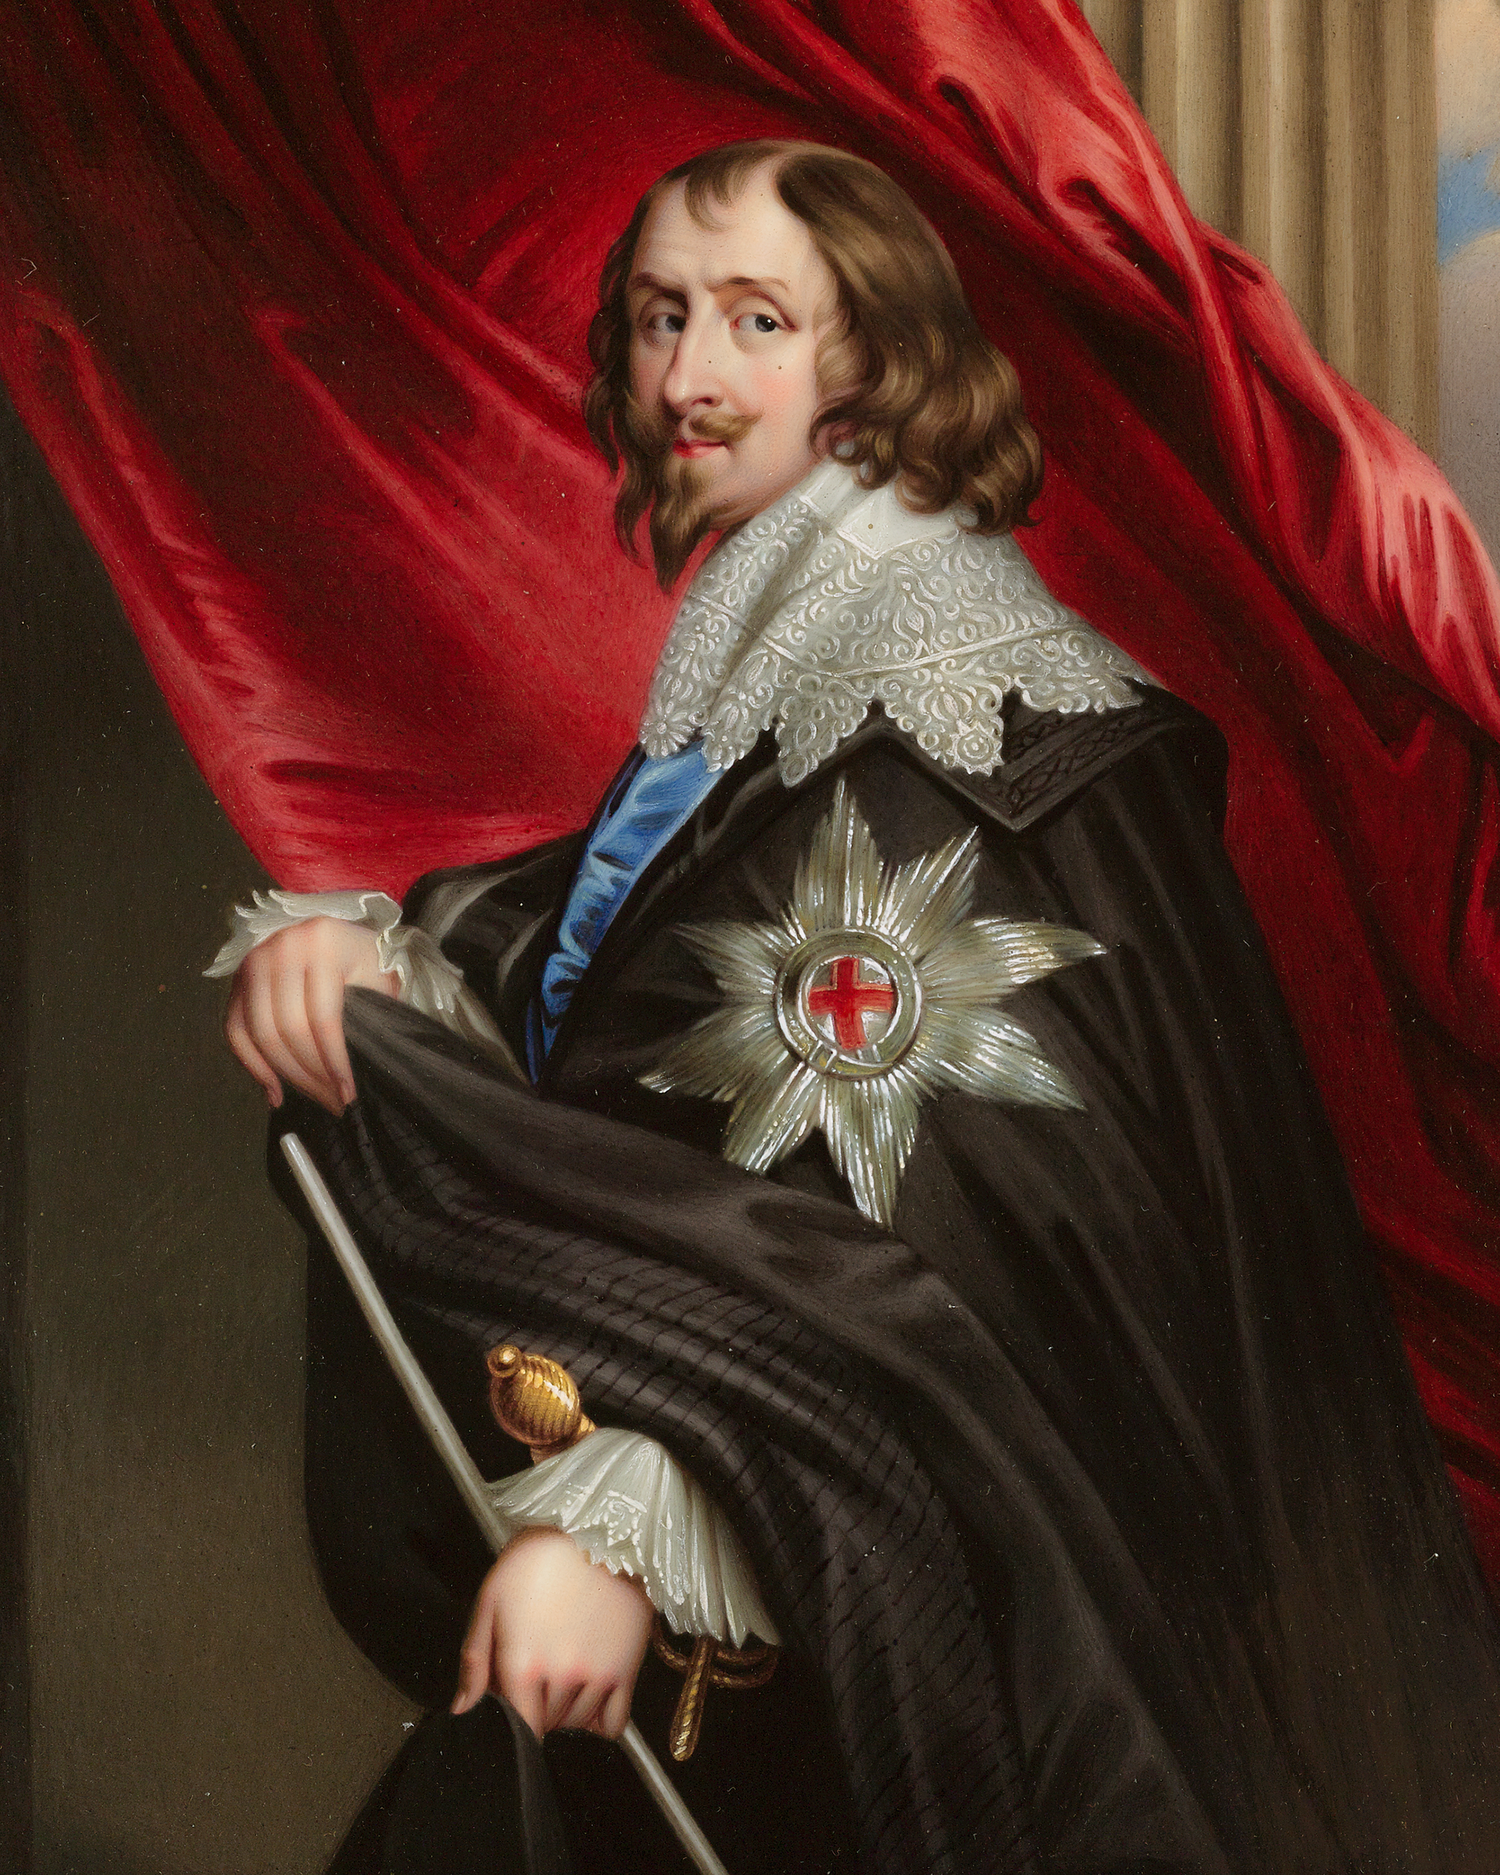 Portrait of Philip, Earl of Pembroke by Henry Pierce Bone